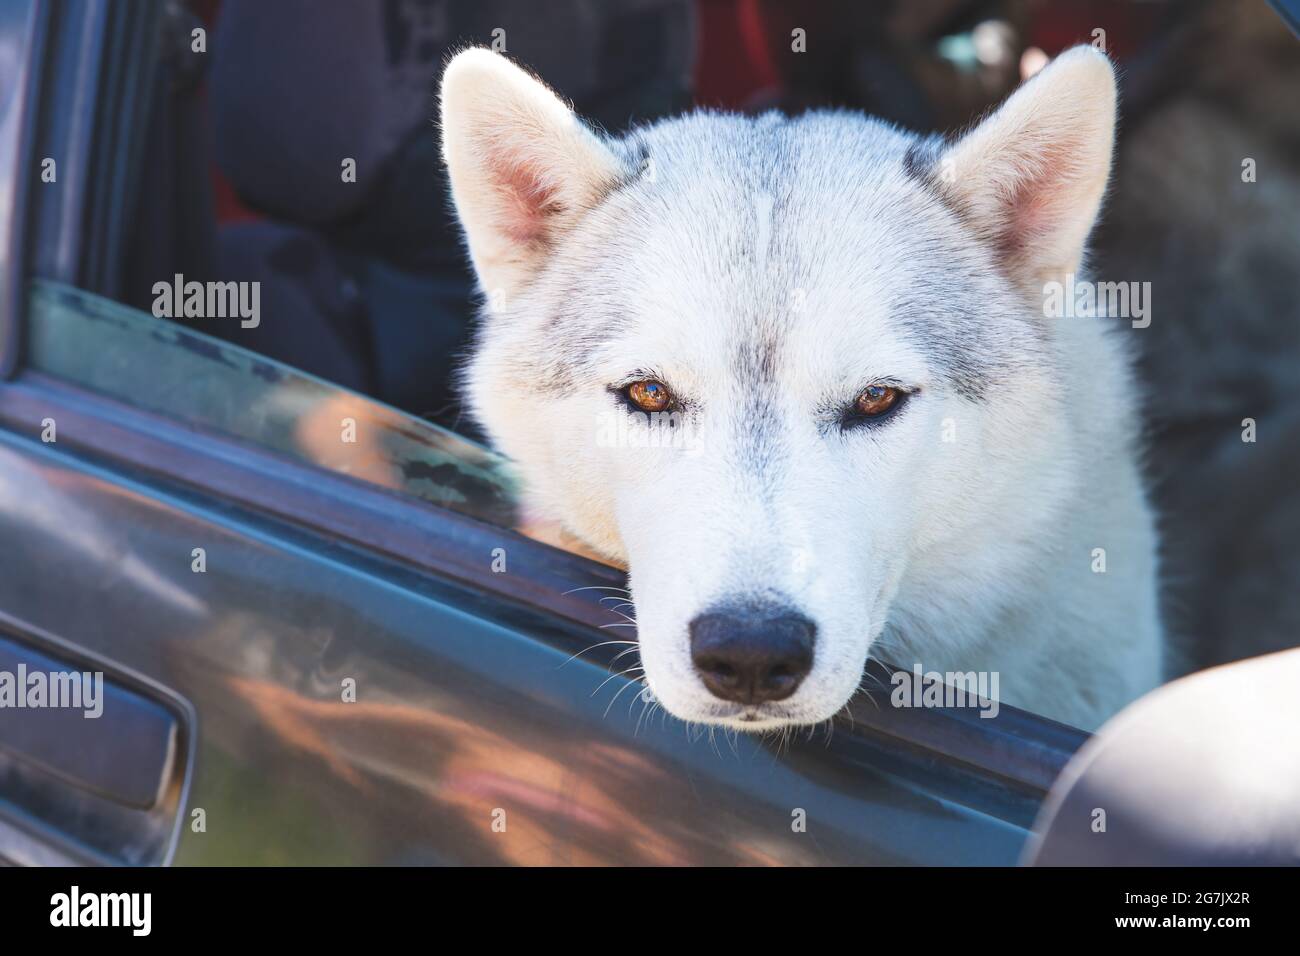 Ein weißer sibirischer Husky, der in einem Auto sitzt und aus dem offenen Fenster blickt. Reisen, Autoreise mit Haustieren. Treuer Freund, immer zusammen. Nahaufnahme Stockfoto